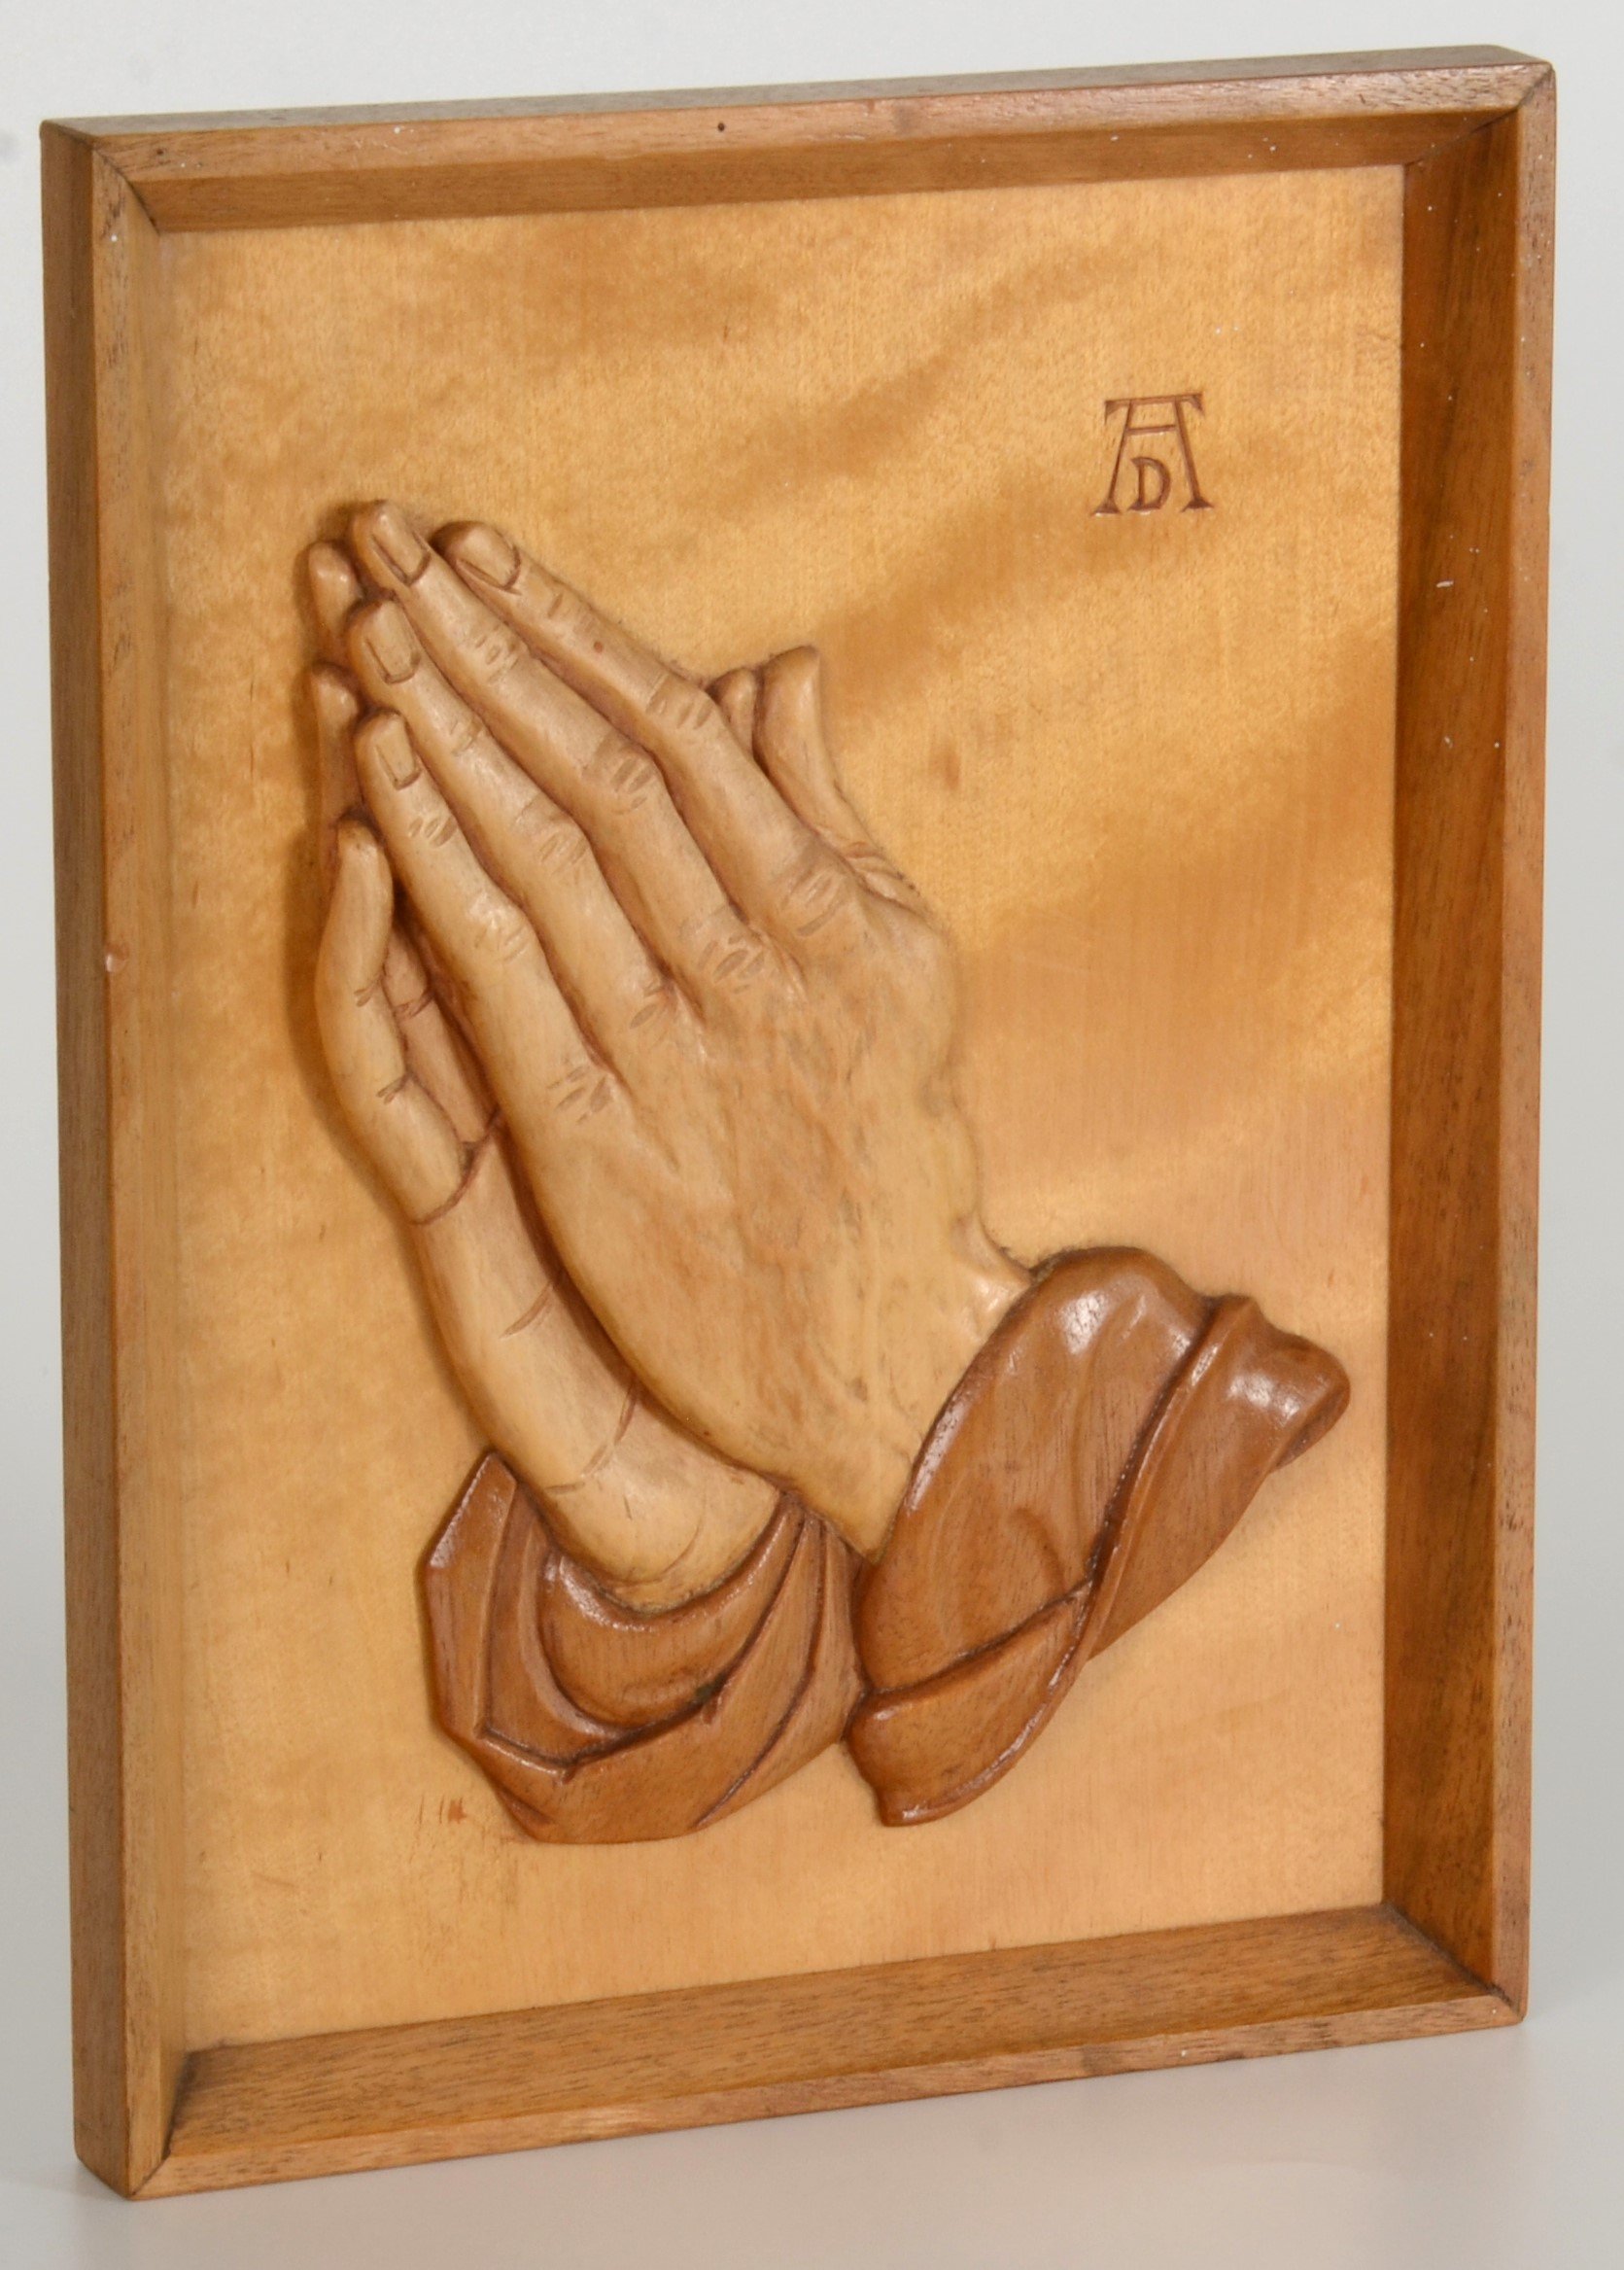 Holzrelief: Gefaltete Hände (DDR Geschichtsmuseum im Dokumentationszentrum Perleberg CC BY-SA)